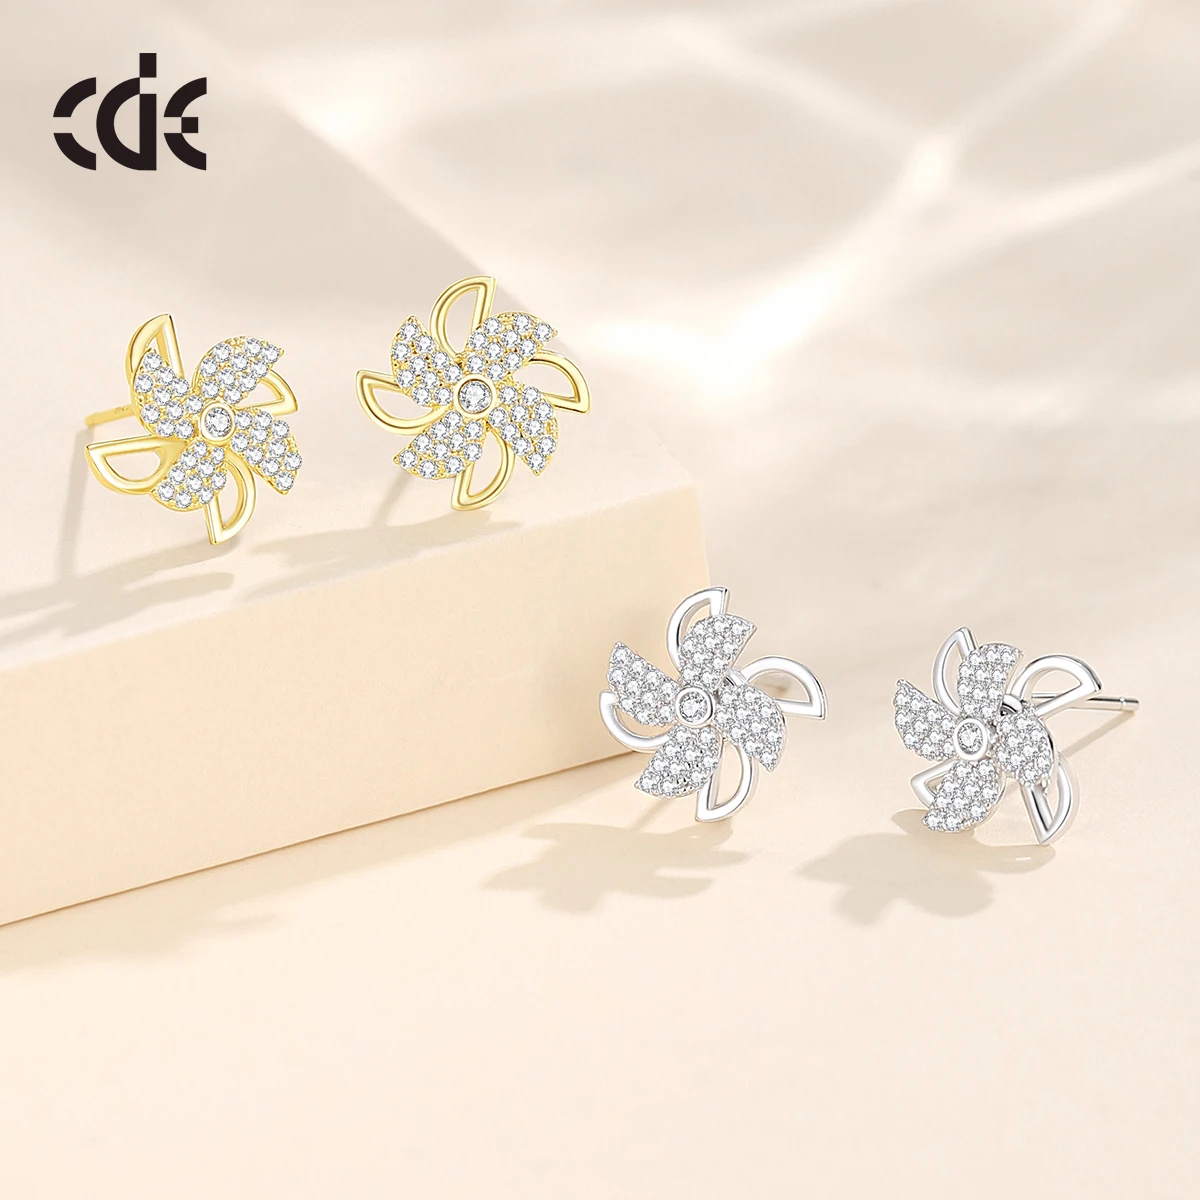 CDE CZYE009 Silver 925 Jewelry Anxiety Earrings 14K Gold Plated Pinwheel Earrings Wholesale Bulk Women Windmill Stud Earrings